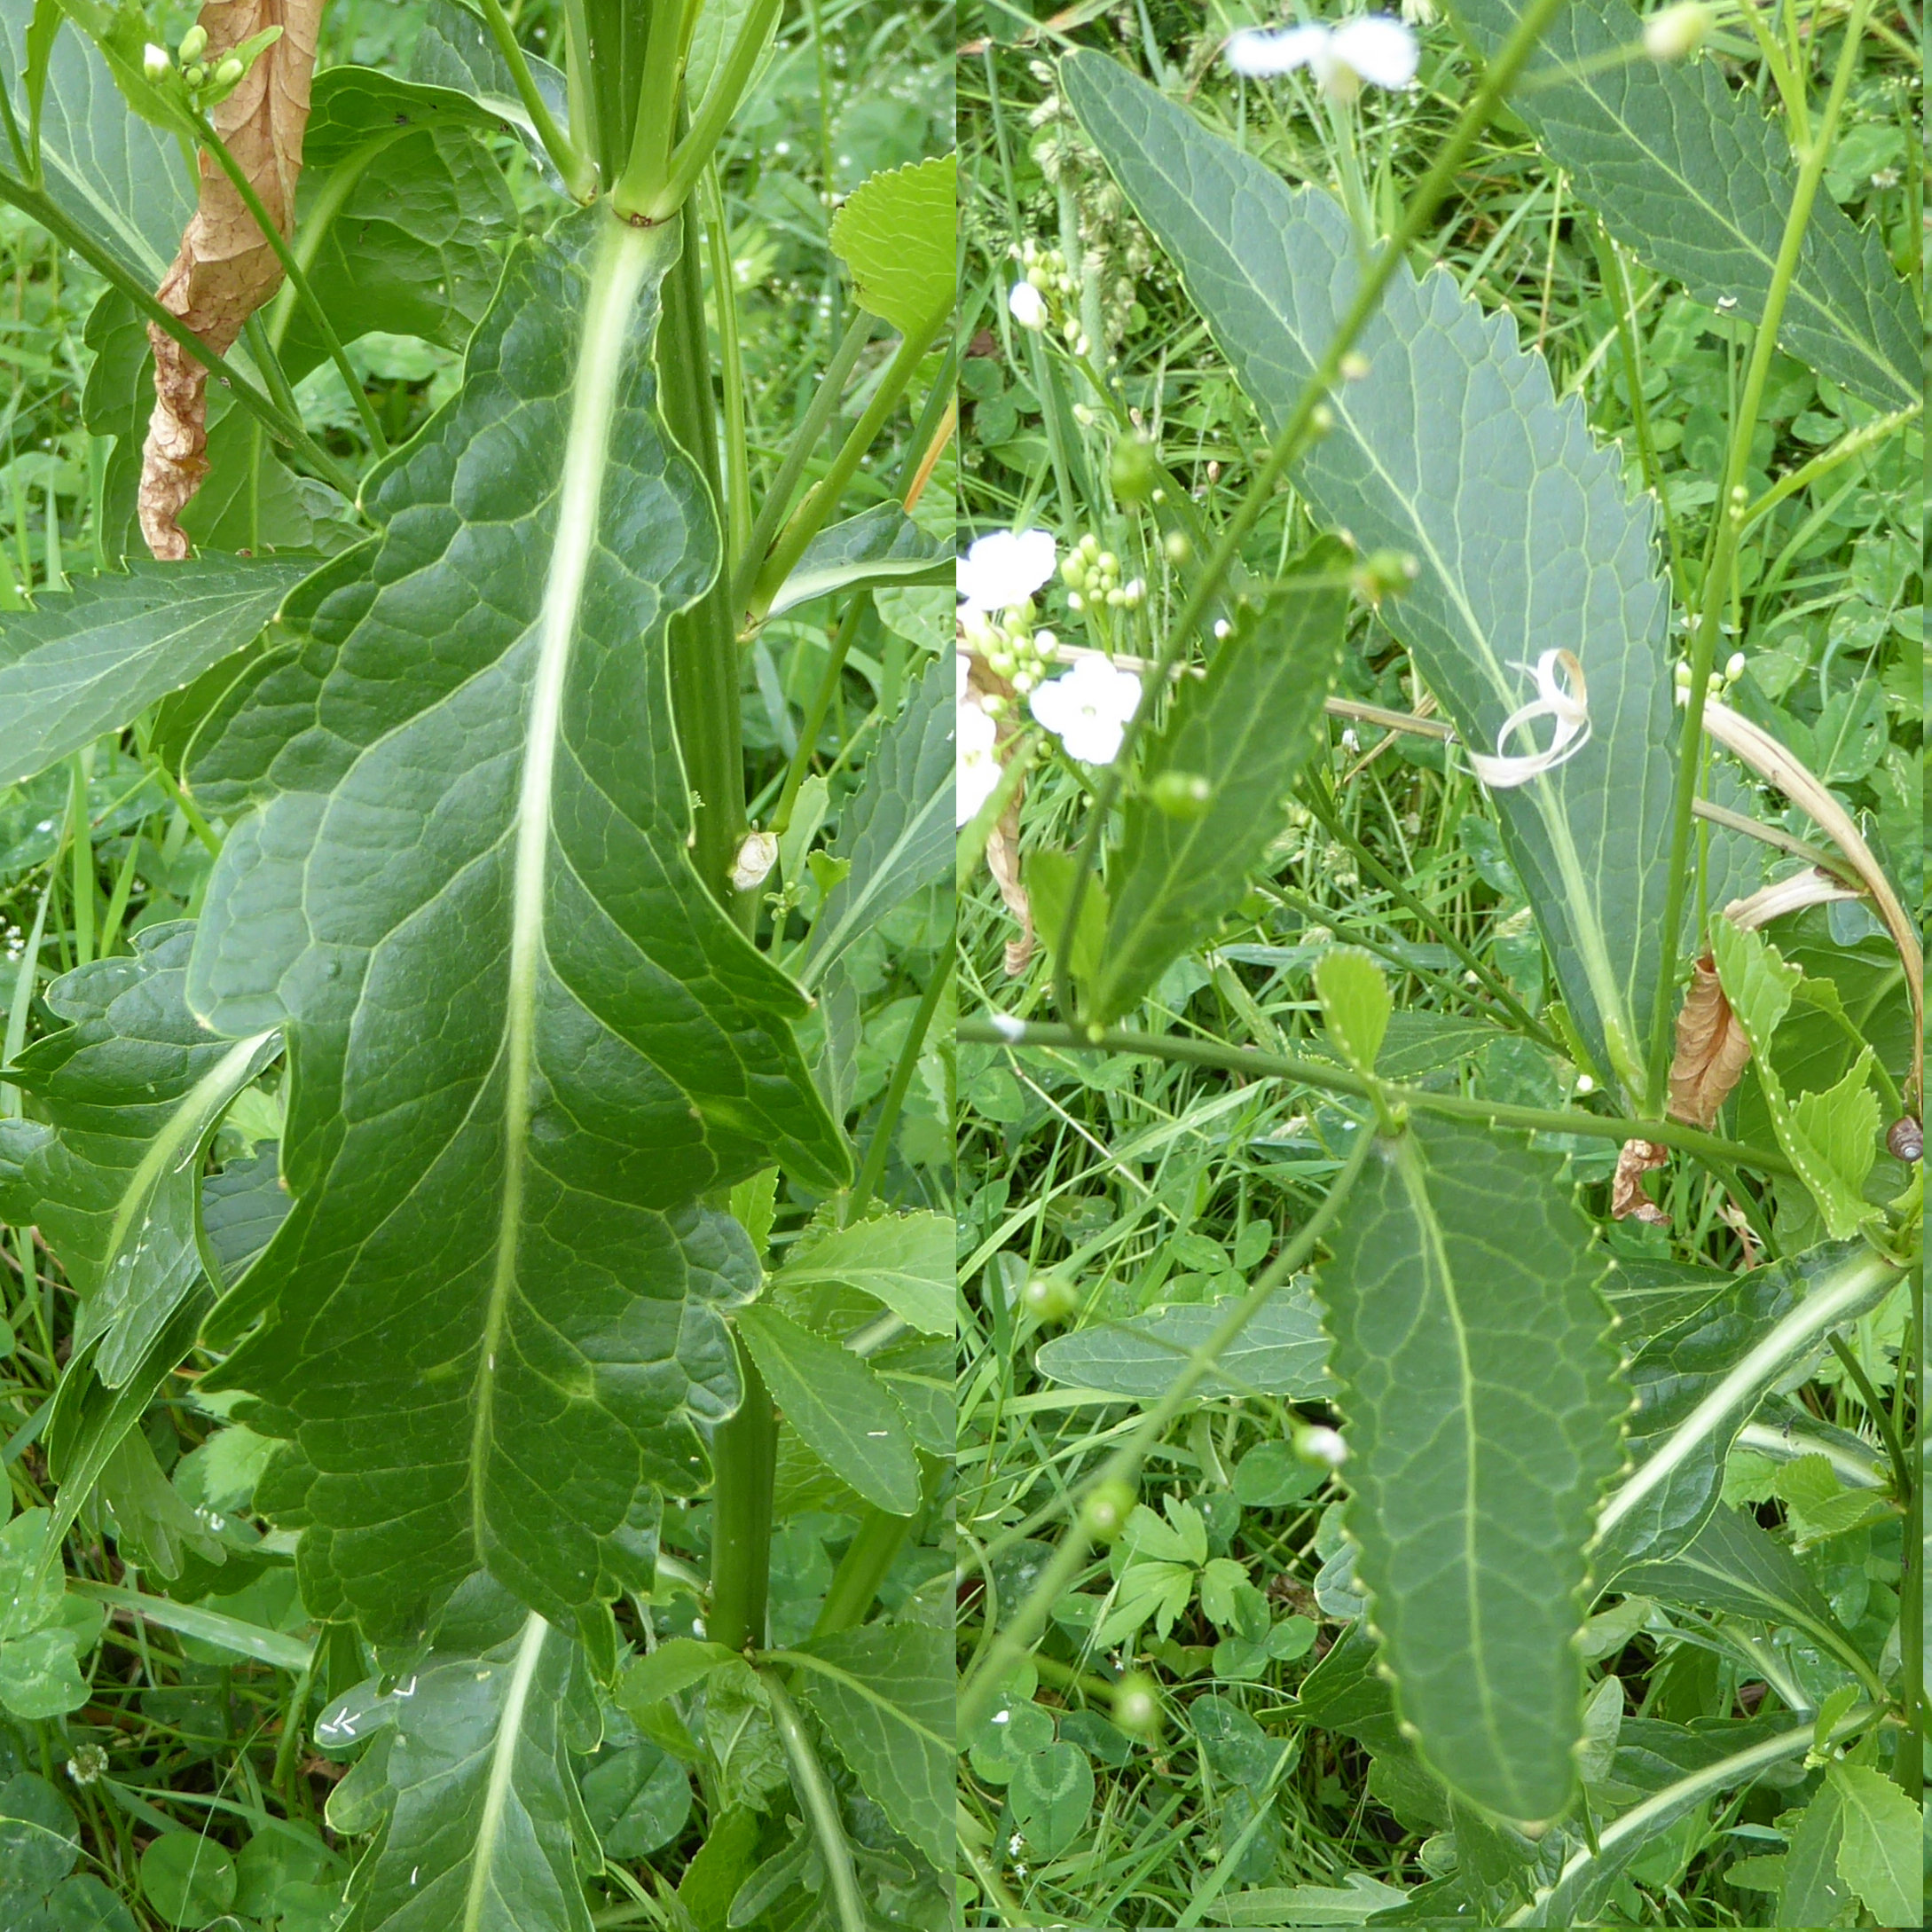 Meerrettich / Armoracia rusticana